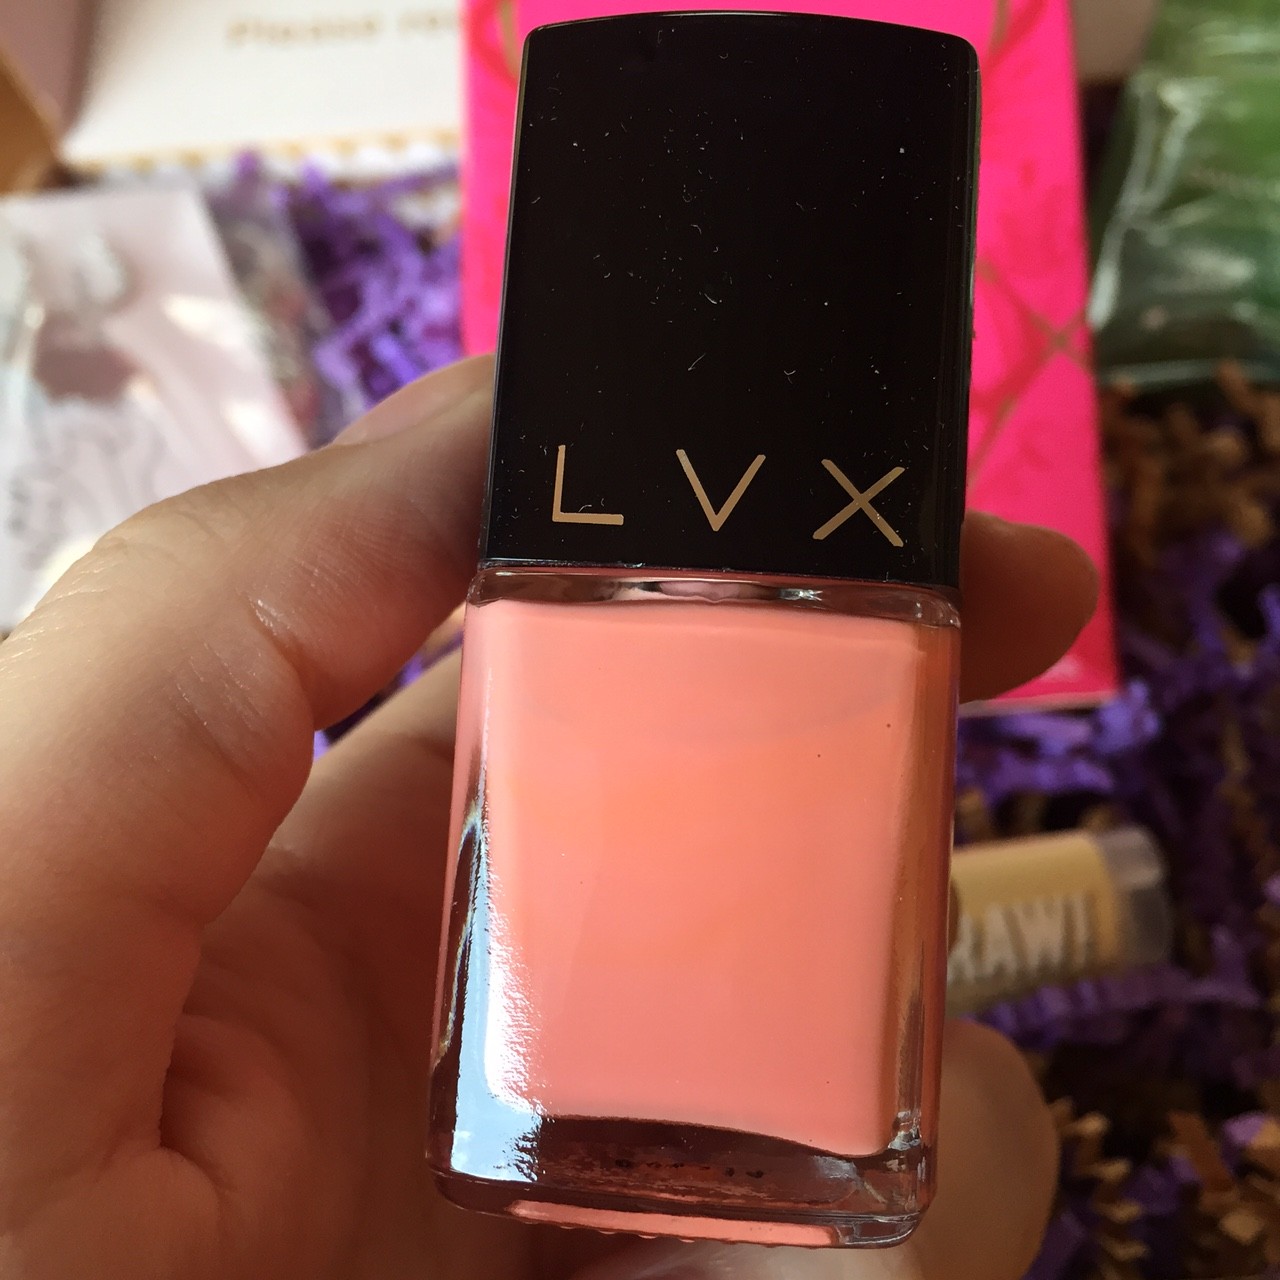 LVX nail polish